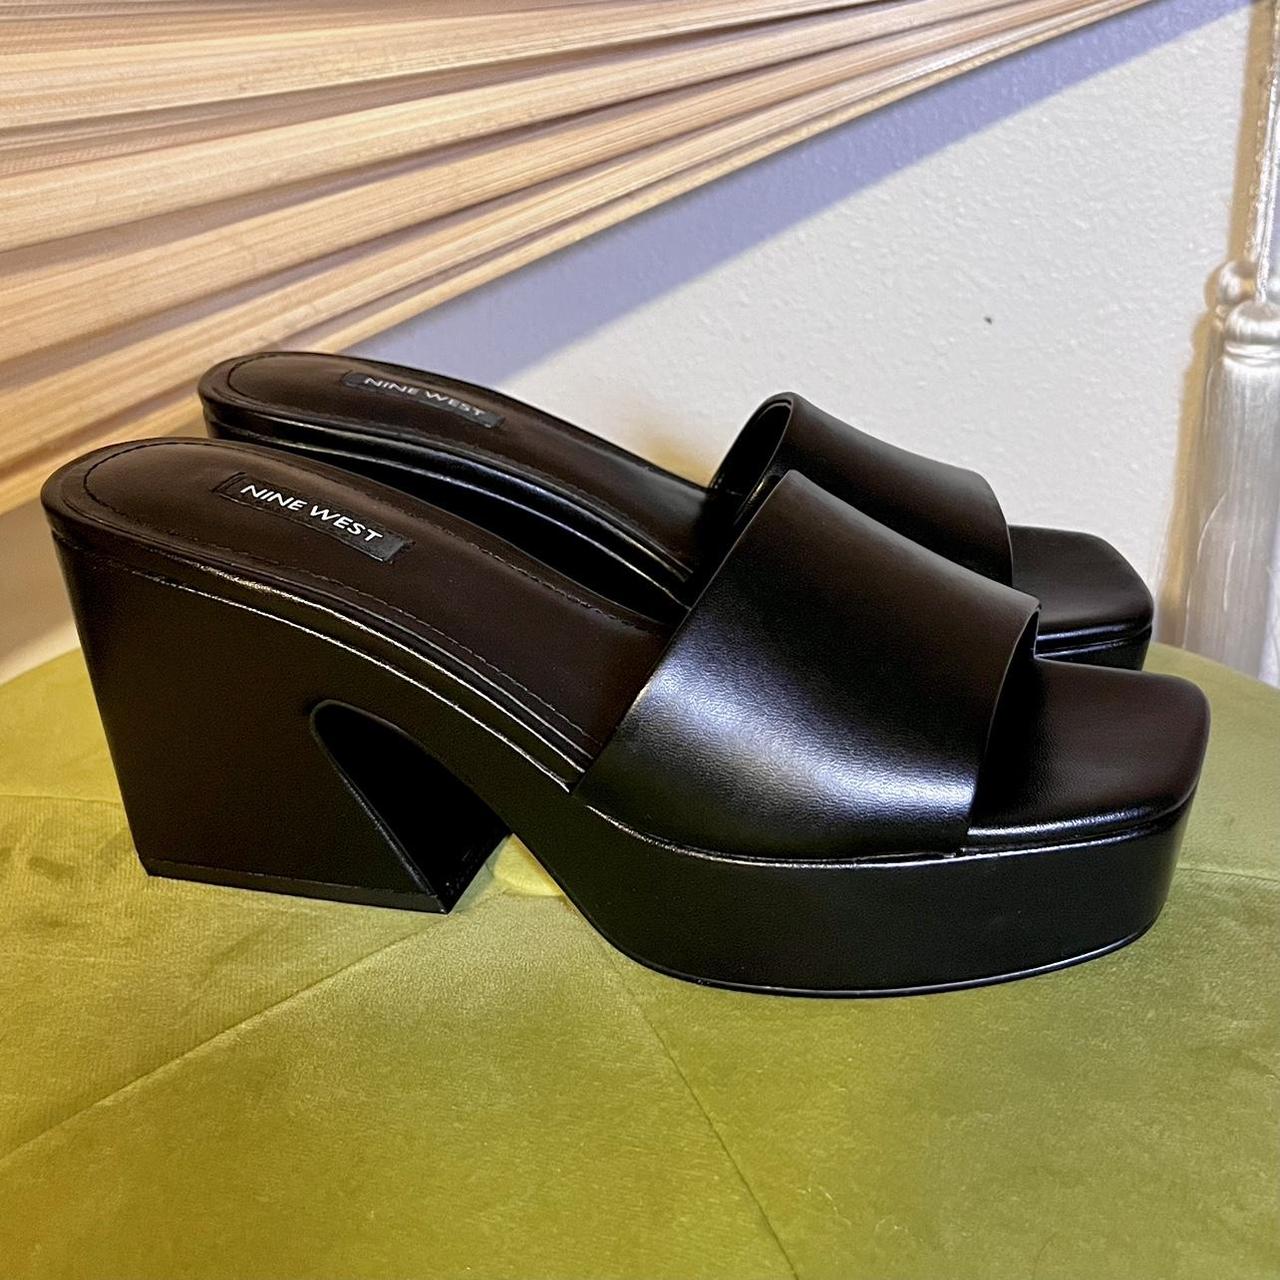 Vintage PLATFORM Black NINE WEST Sandals 🖤🍒 Such... - Depop